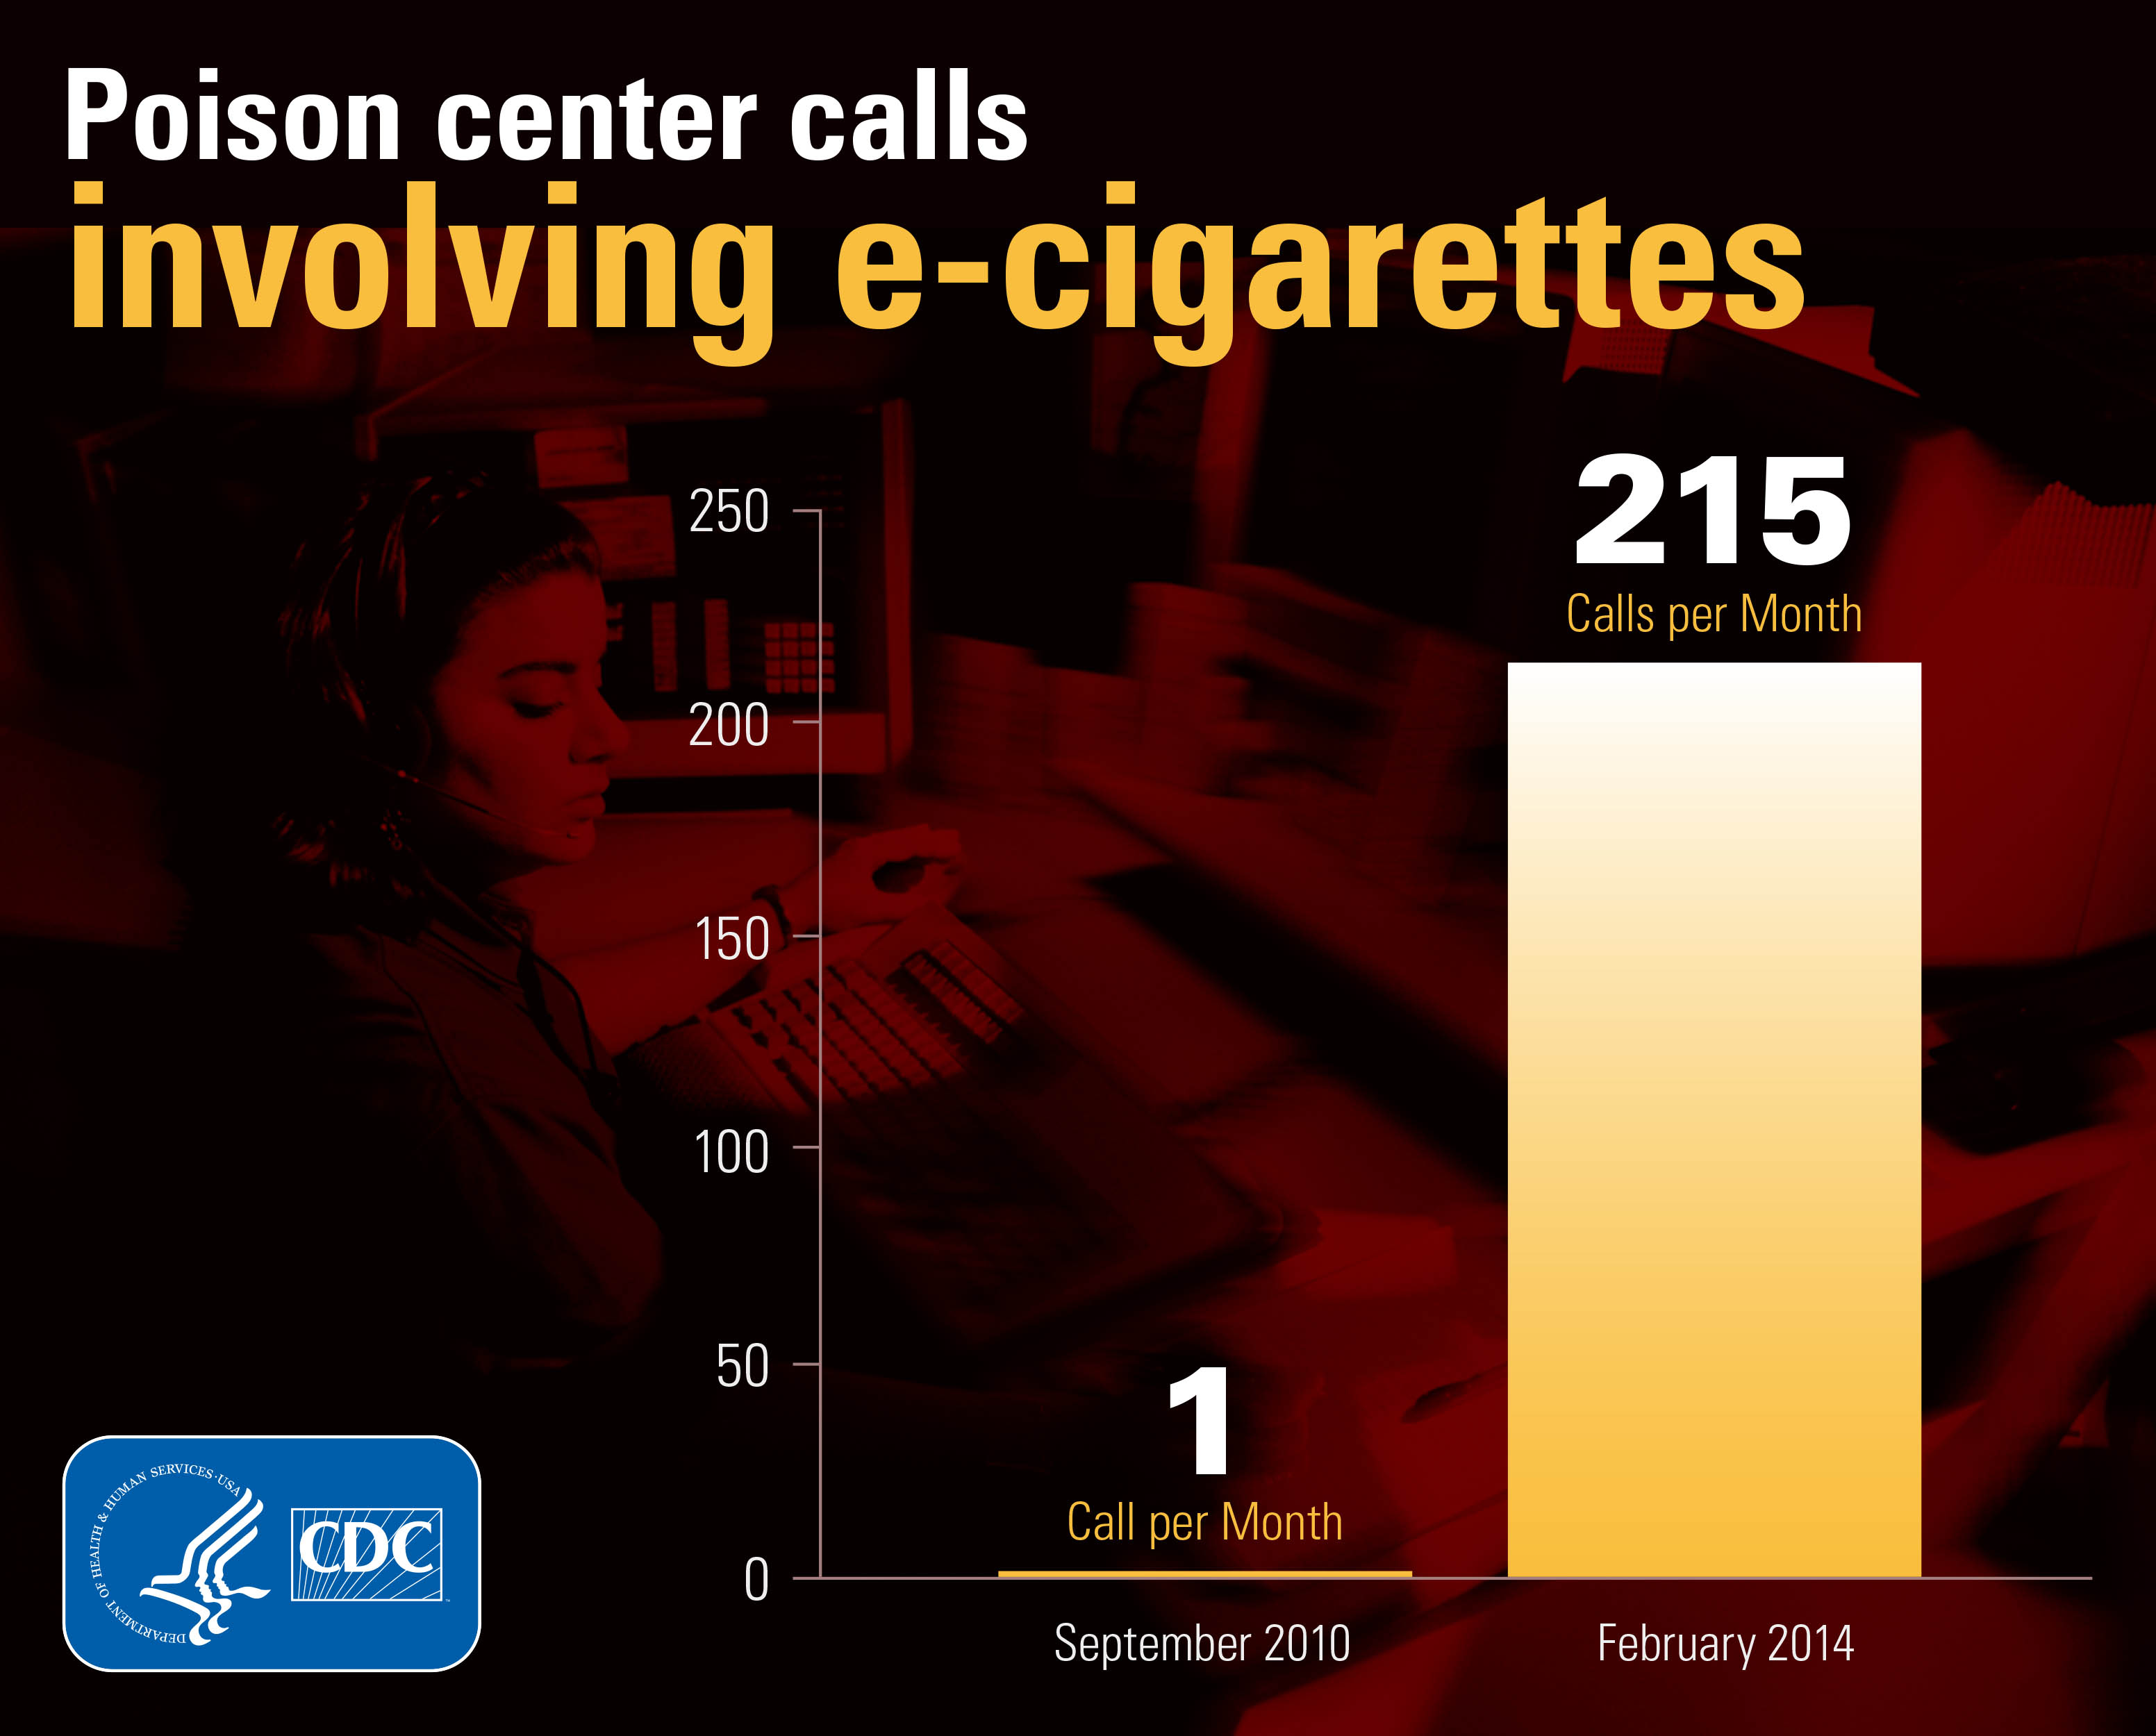 e-cigarette poison control center calls